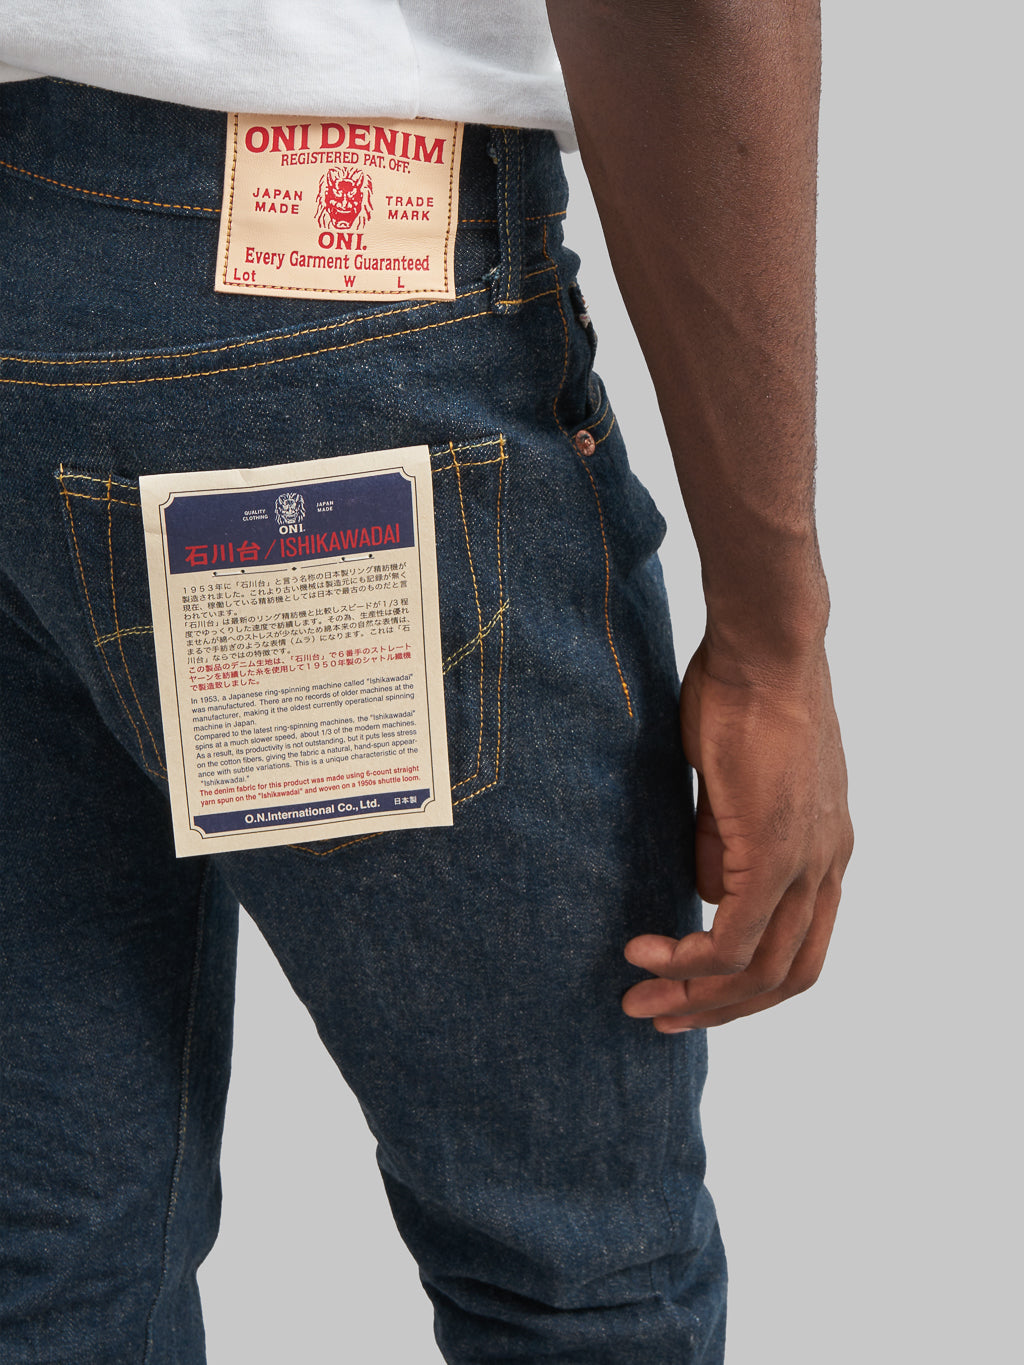 ONI Denim 622 Ishikawadai 15oz Relaxed Tapered Jeans back pocket